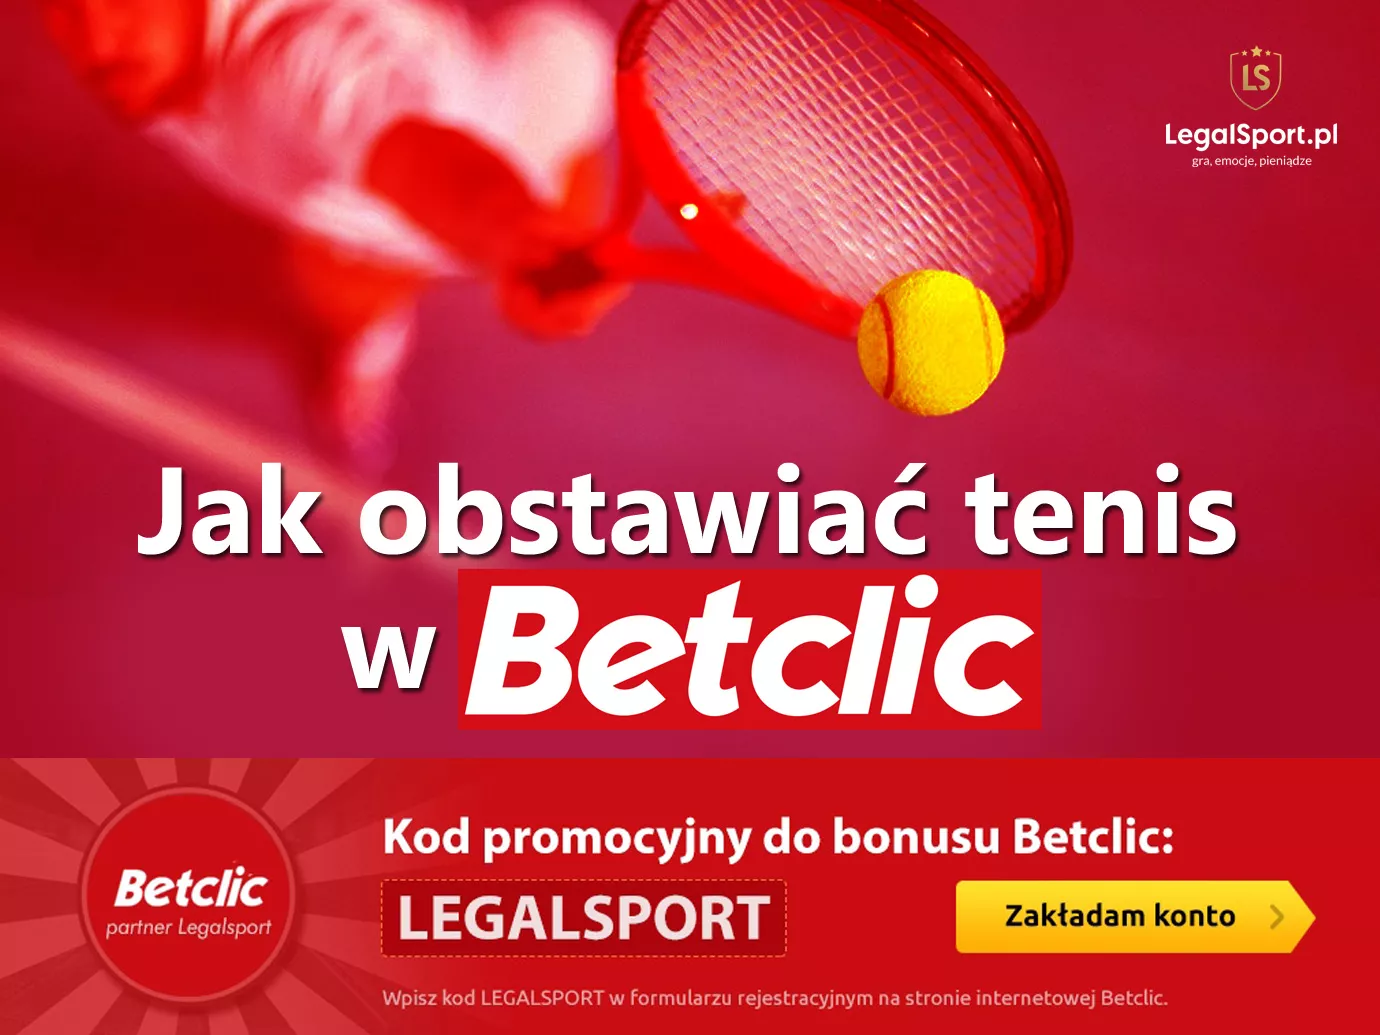 Tenis w Betclic - jak skutecznie typować tenisowe typy